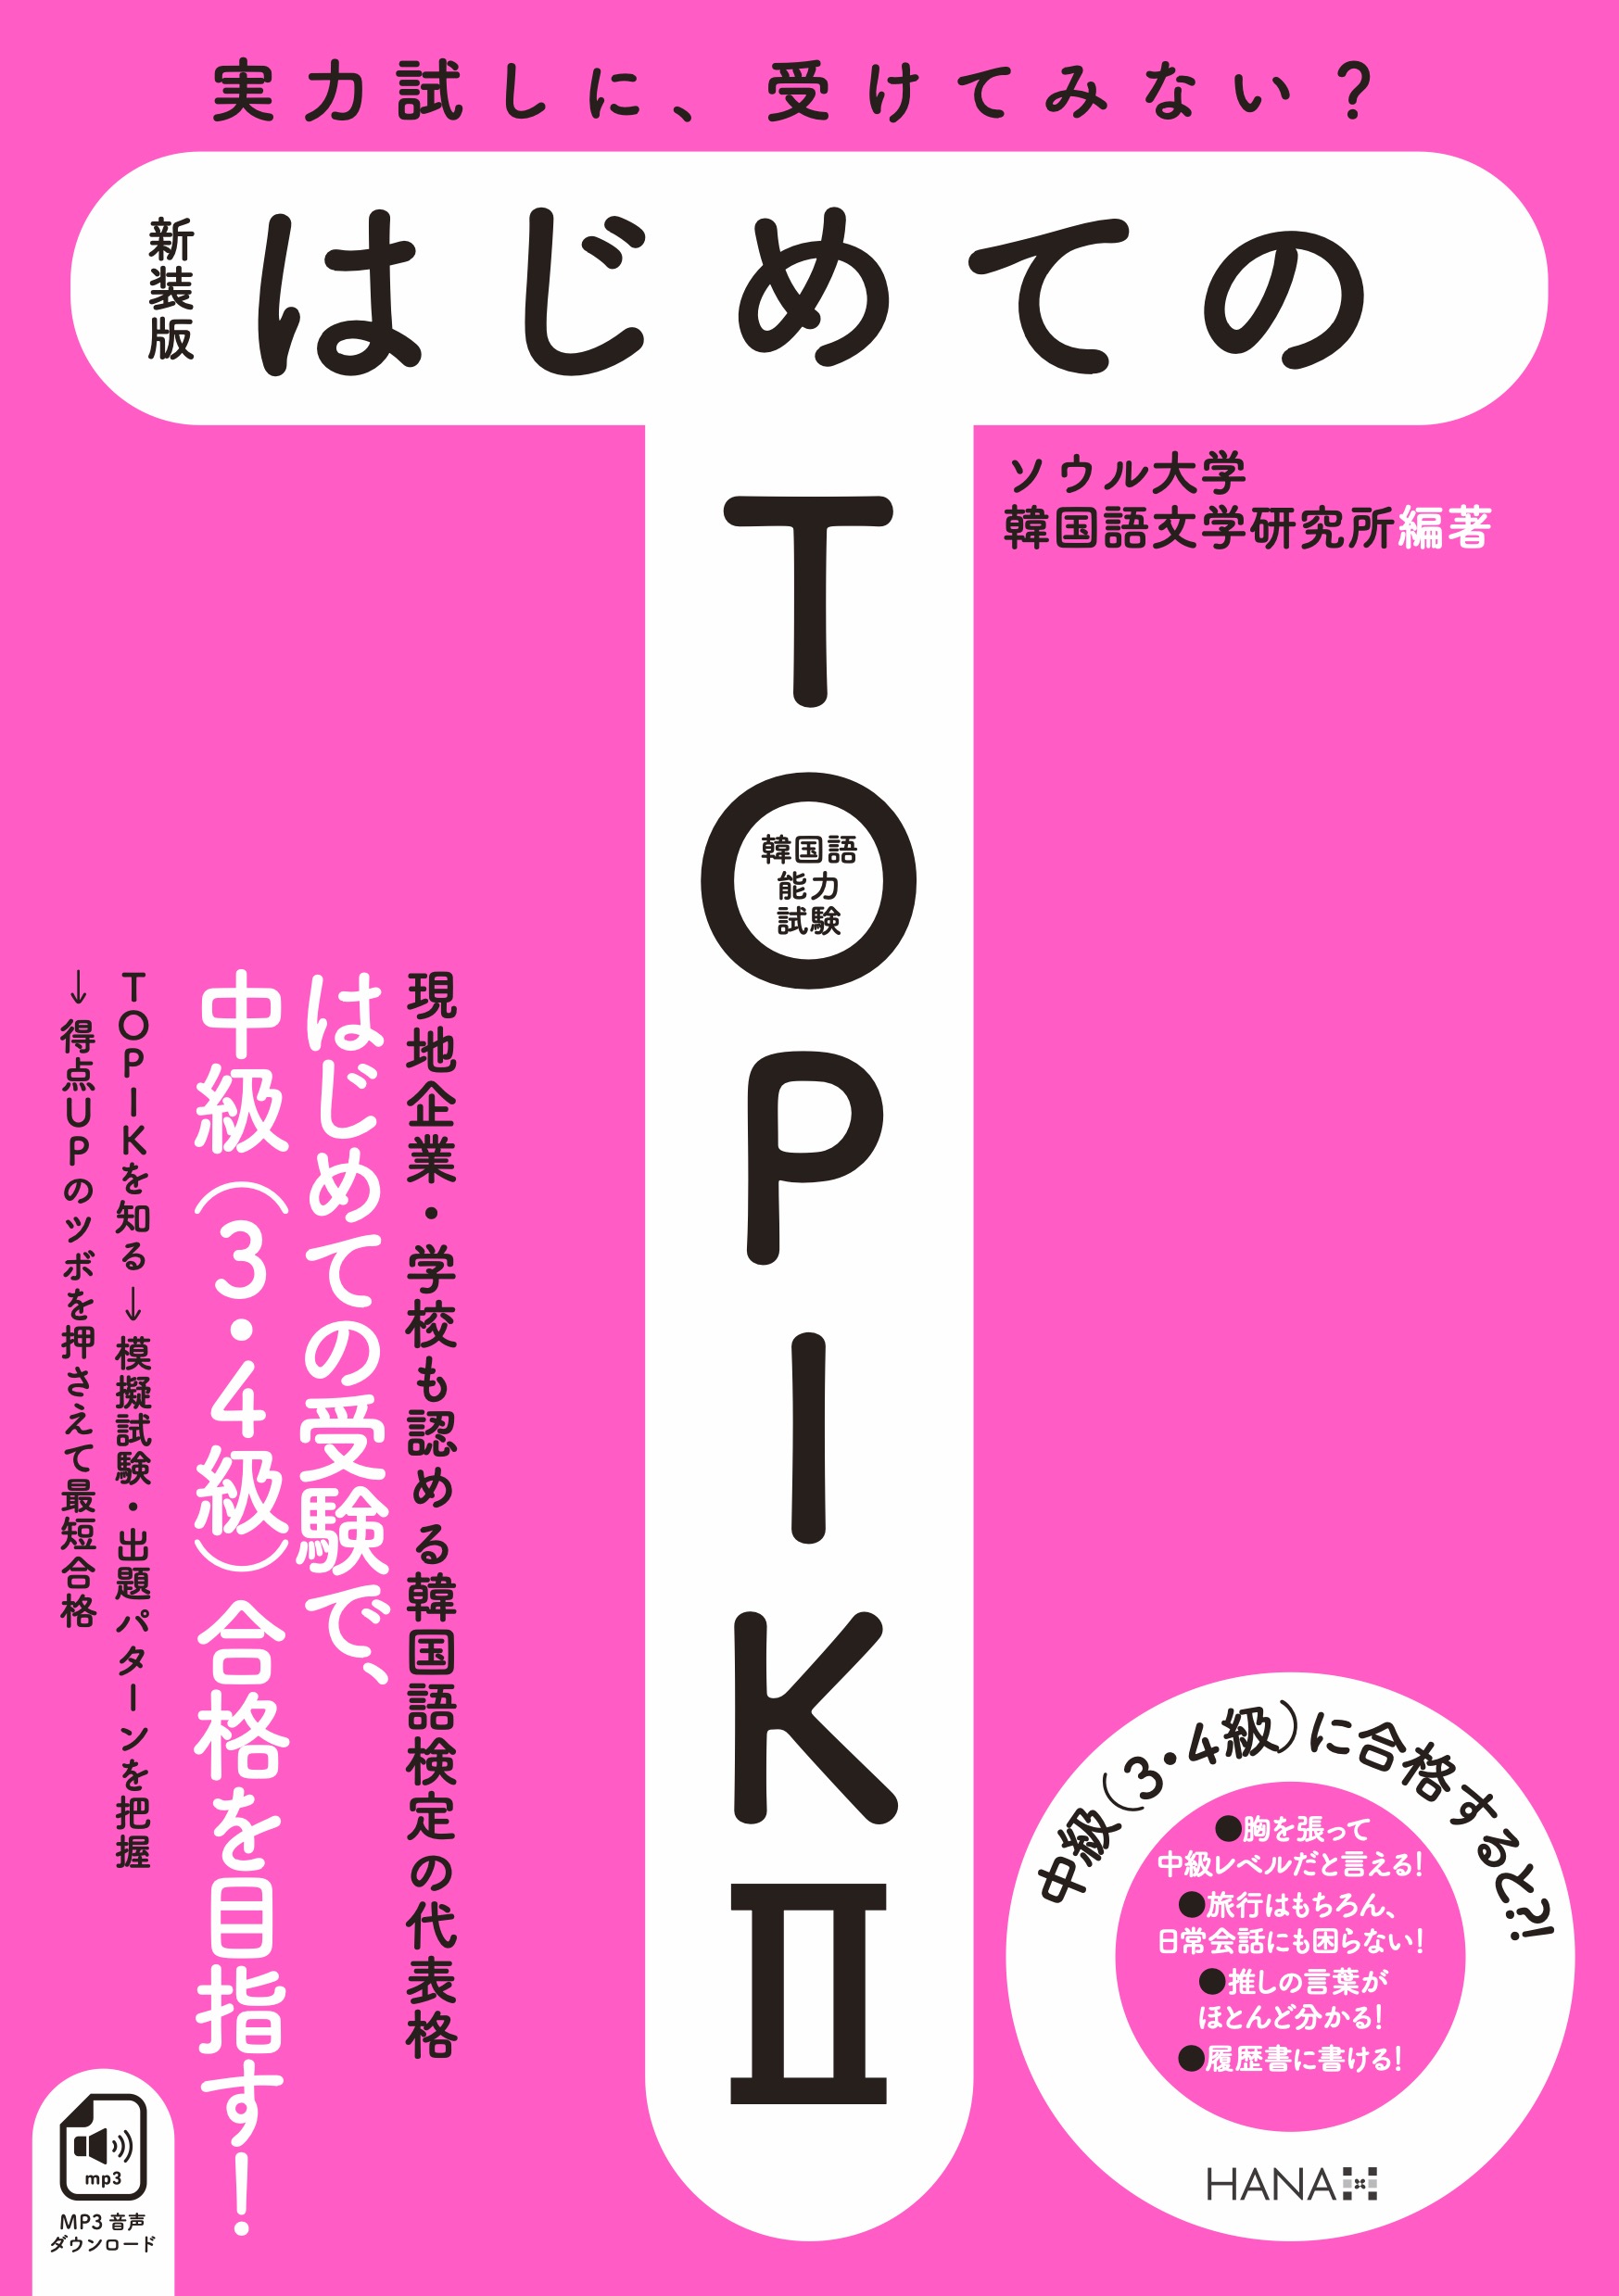 TOPIK I・II 対策教材紹介＆過去問題ダウンロード | TOPIK対策 | 韓国語のHANA